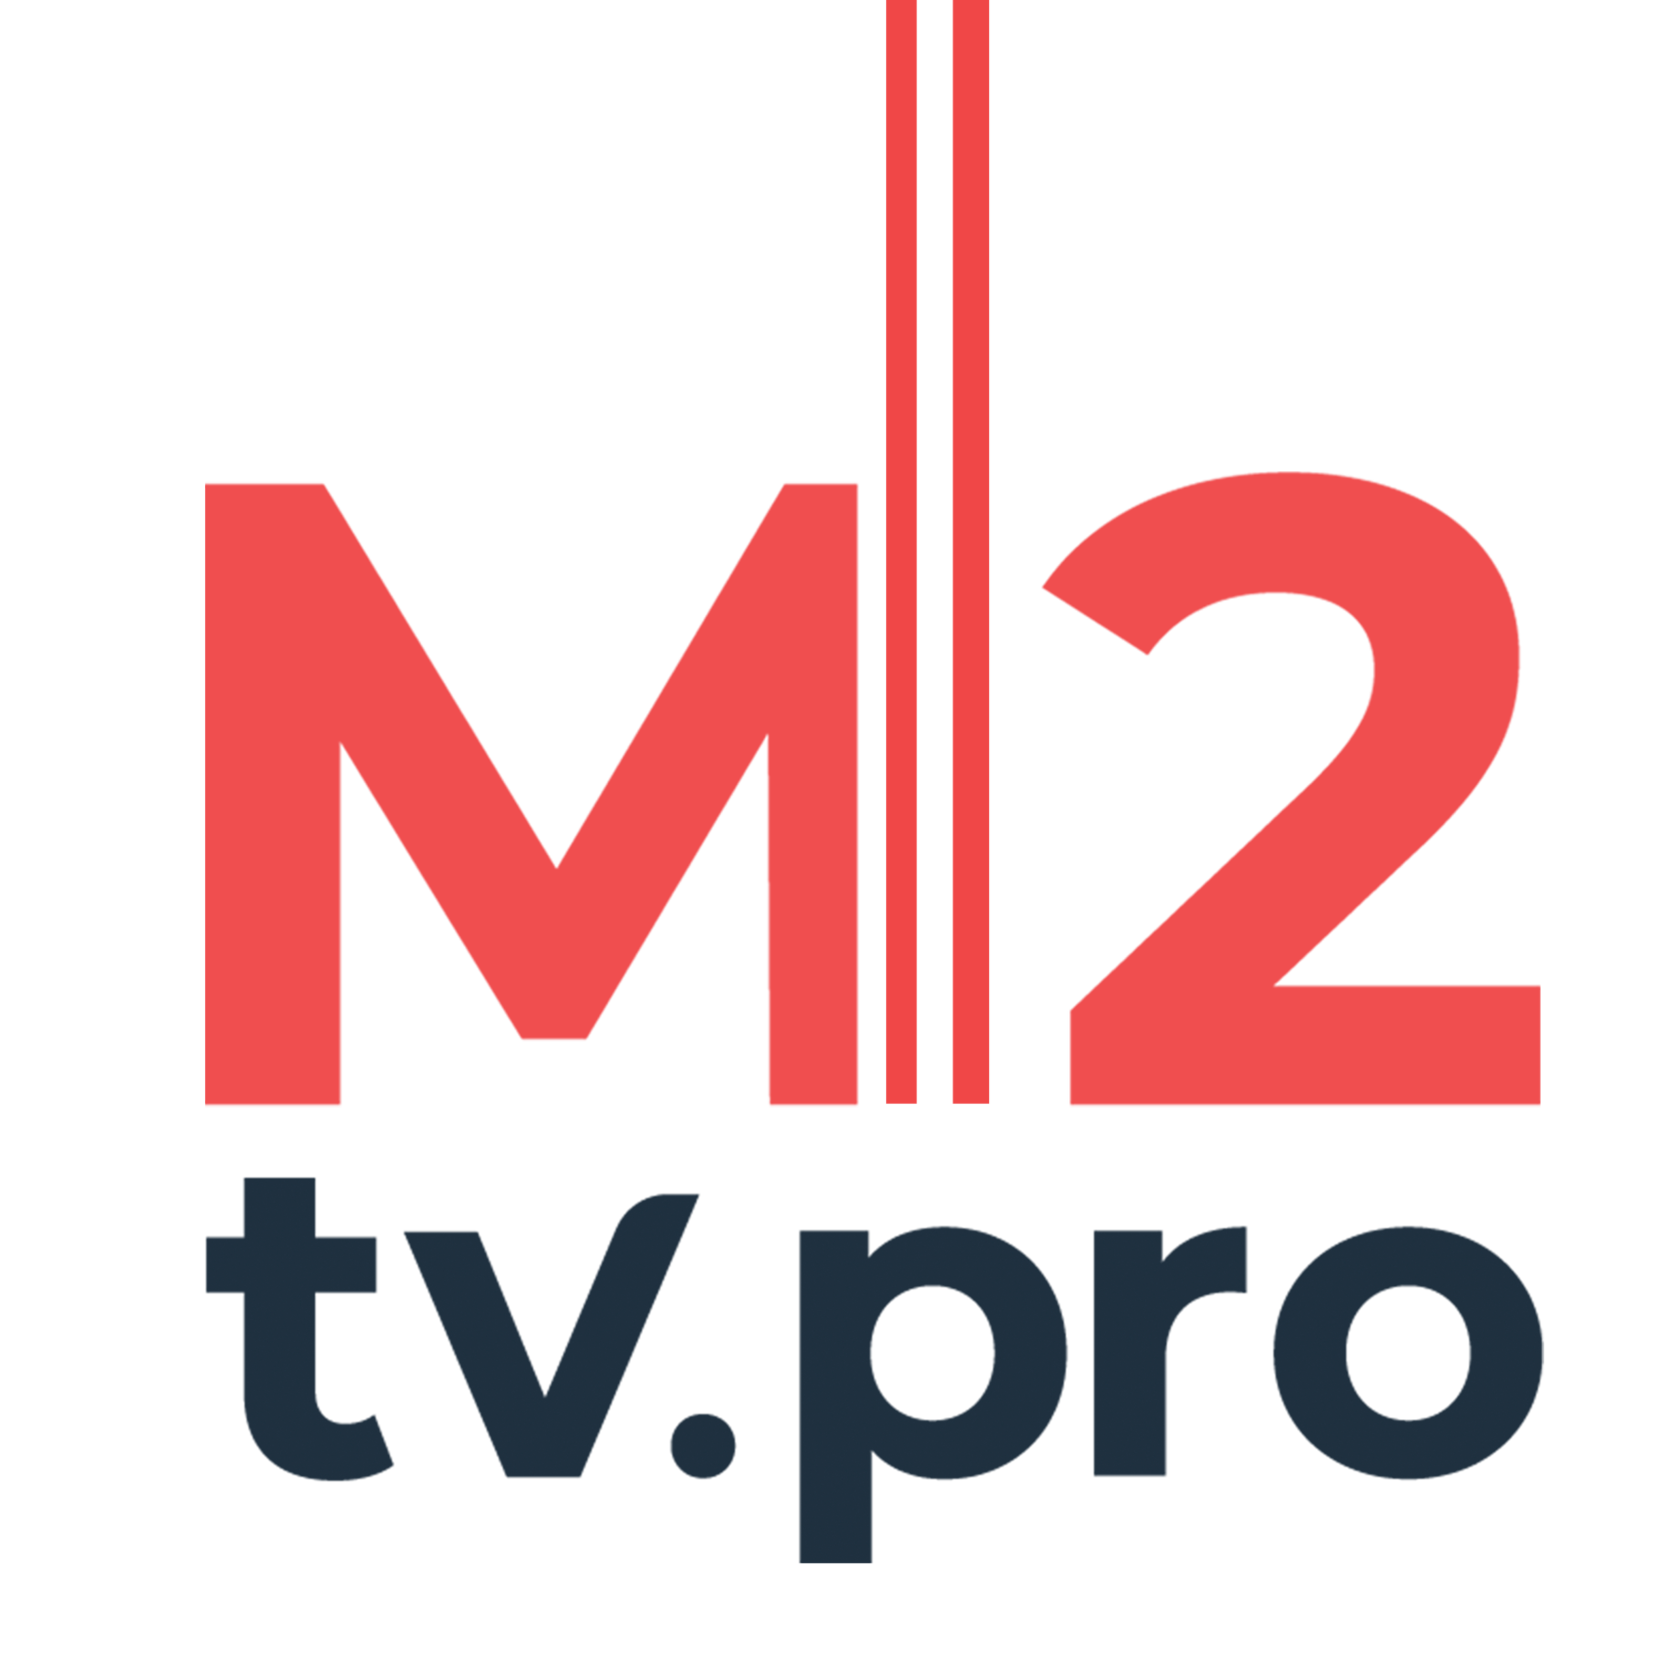 Сеть видеоканалов M2tv